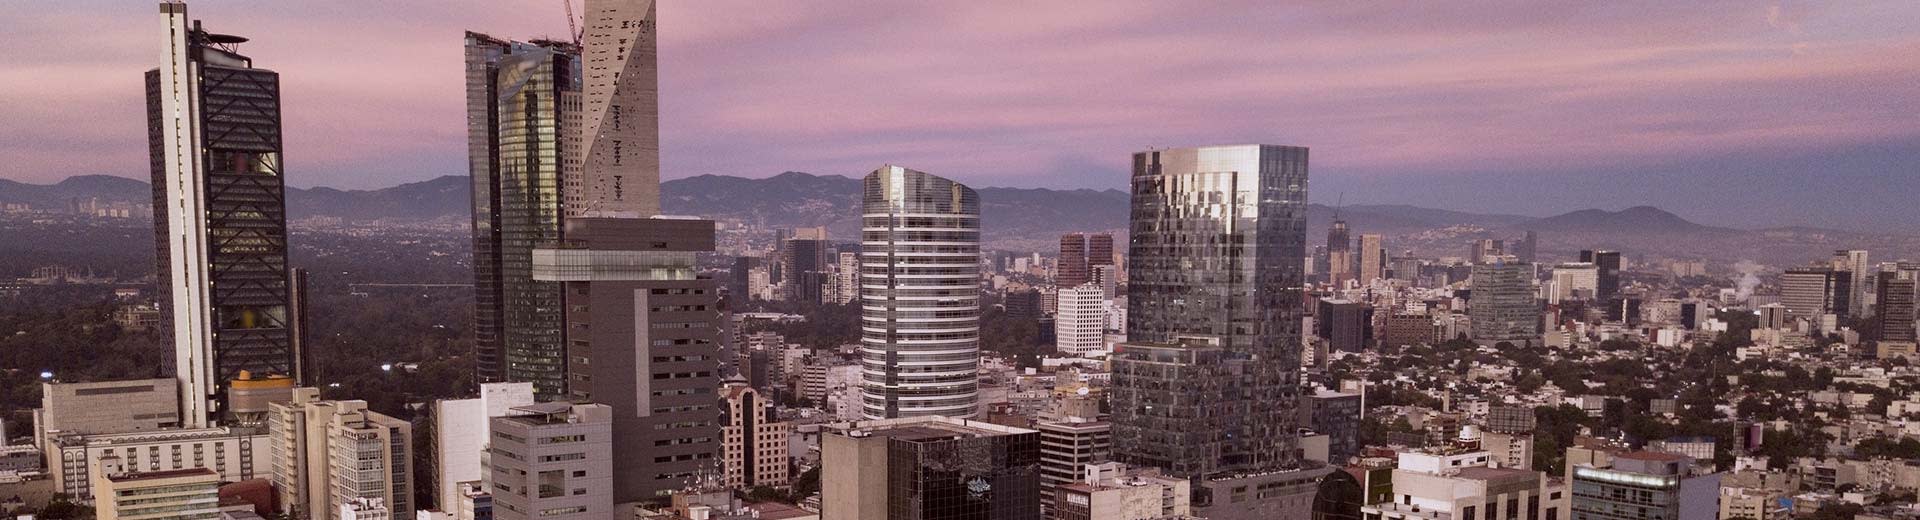 前景に高層ビル群、後景にメキシコシティが広がり、背景には夕暮れや夜明けの紫色の光。